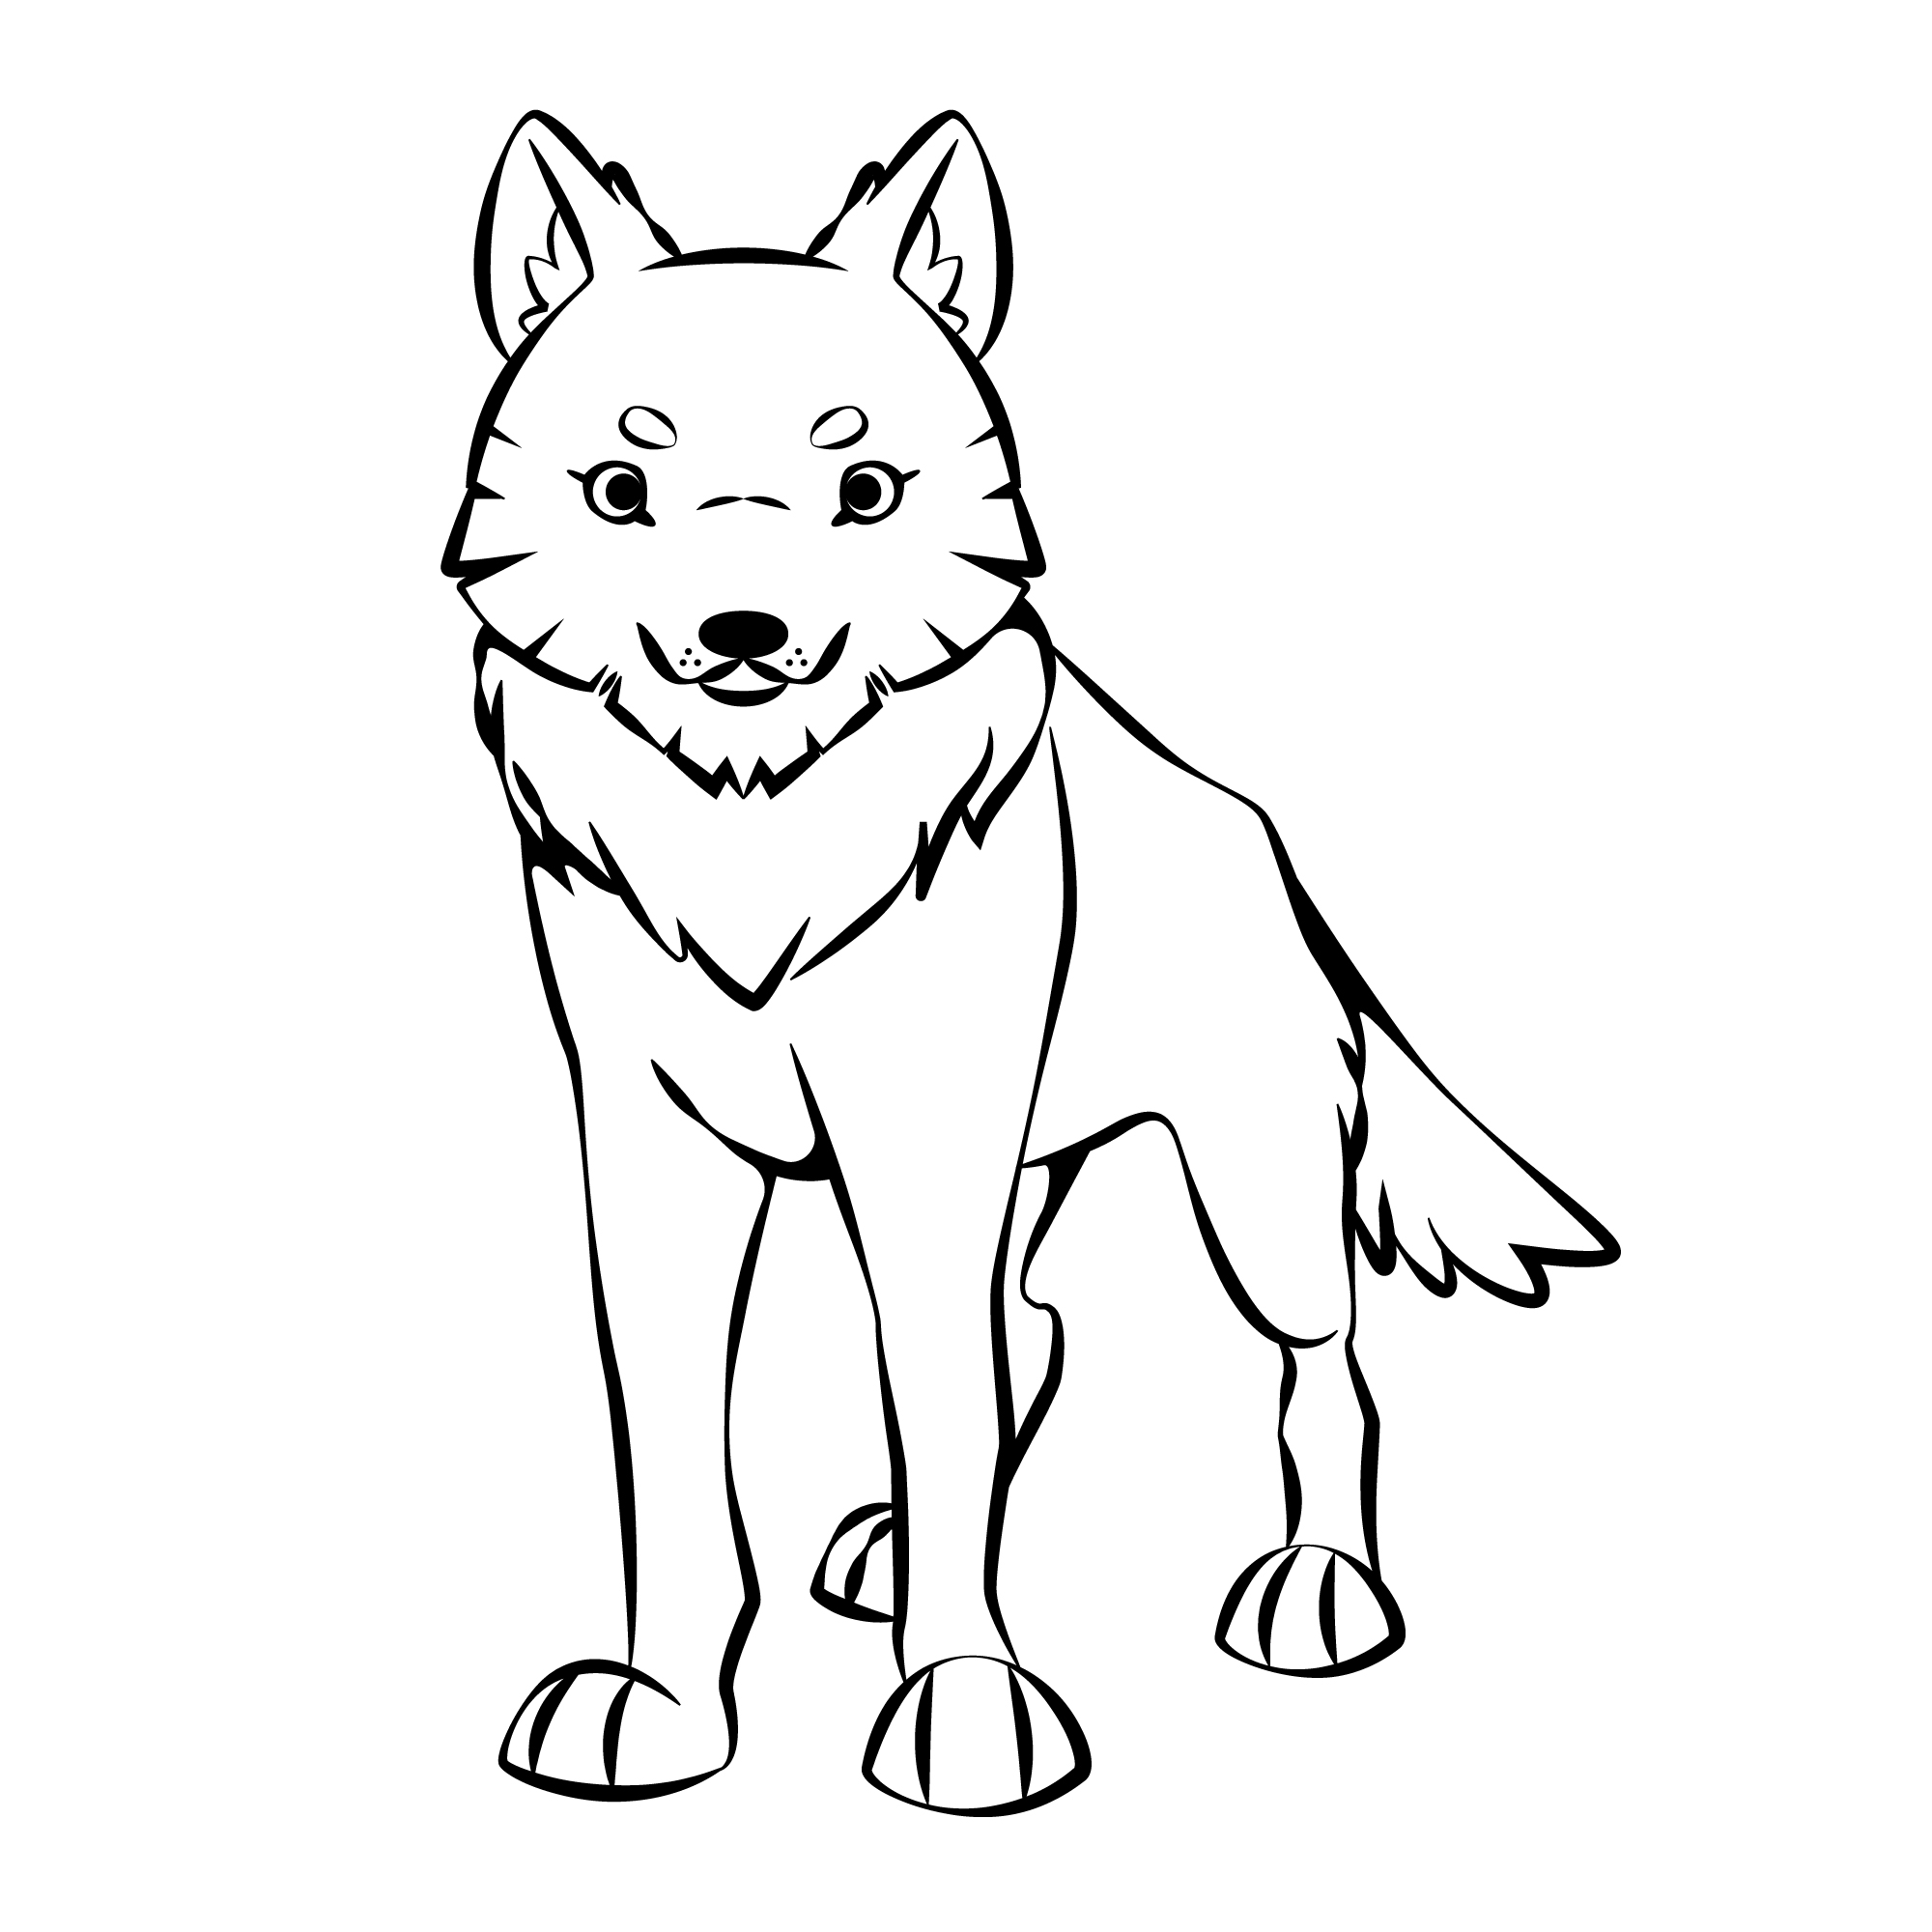 Раскраска мультяшный злой волк формата А4 в высоком качестве